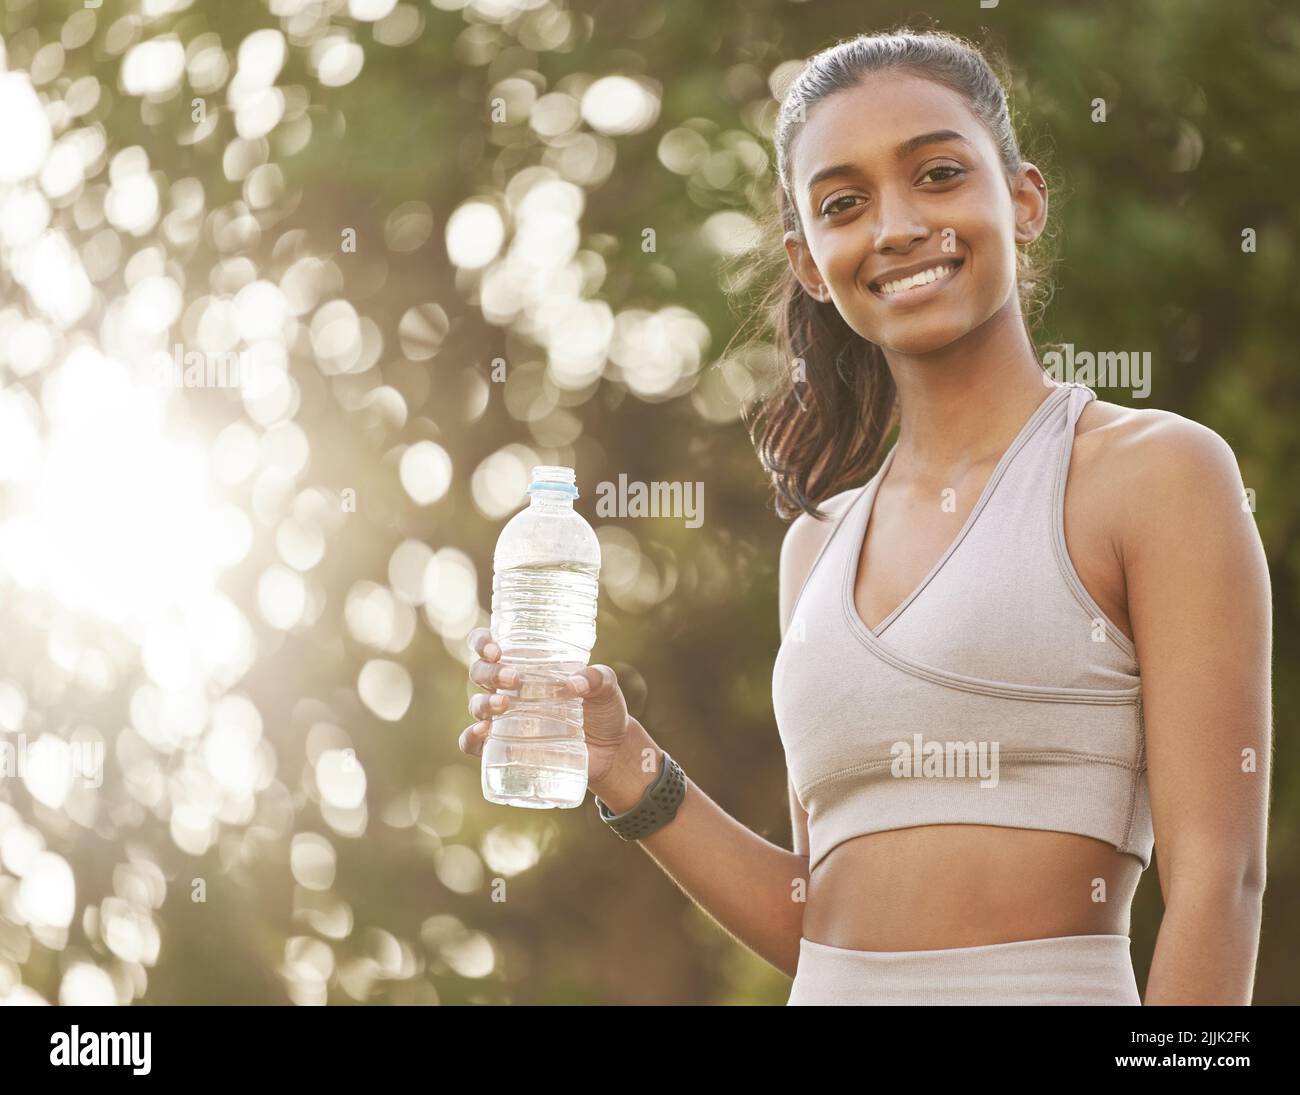 Je viens de refroidir un peu. Portrait d'une jeune femme sportive qui boit de l'eau tout en faisant de l'exercice à l'extérieur. Banque D'Images